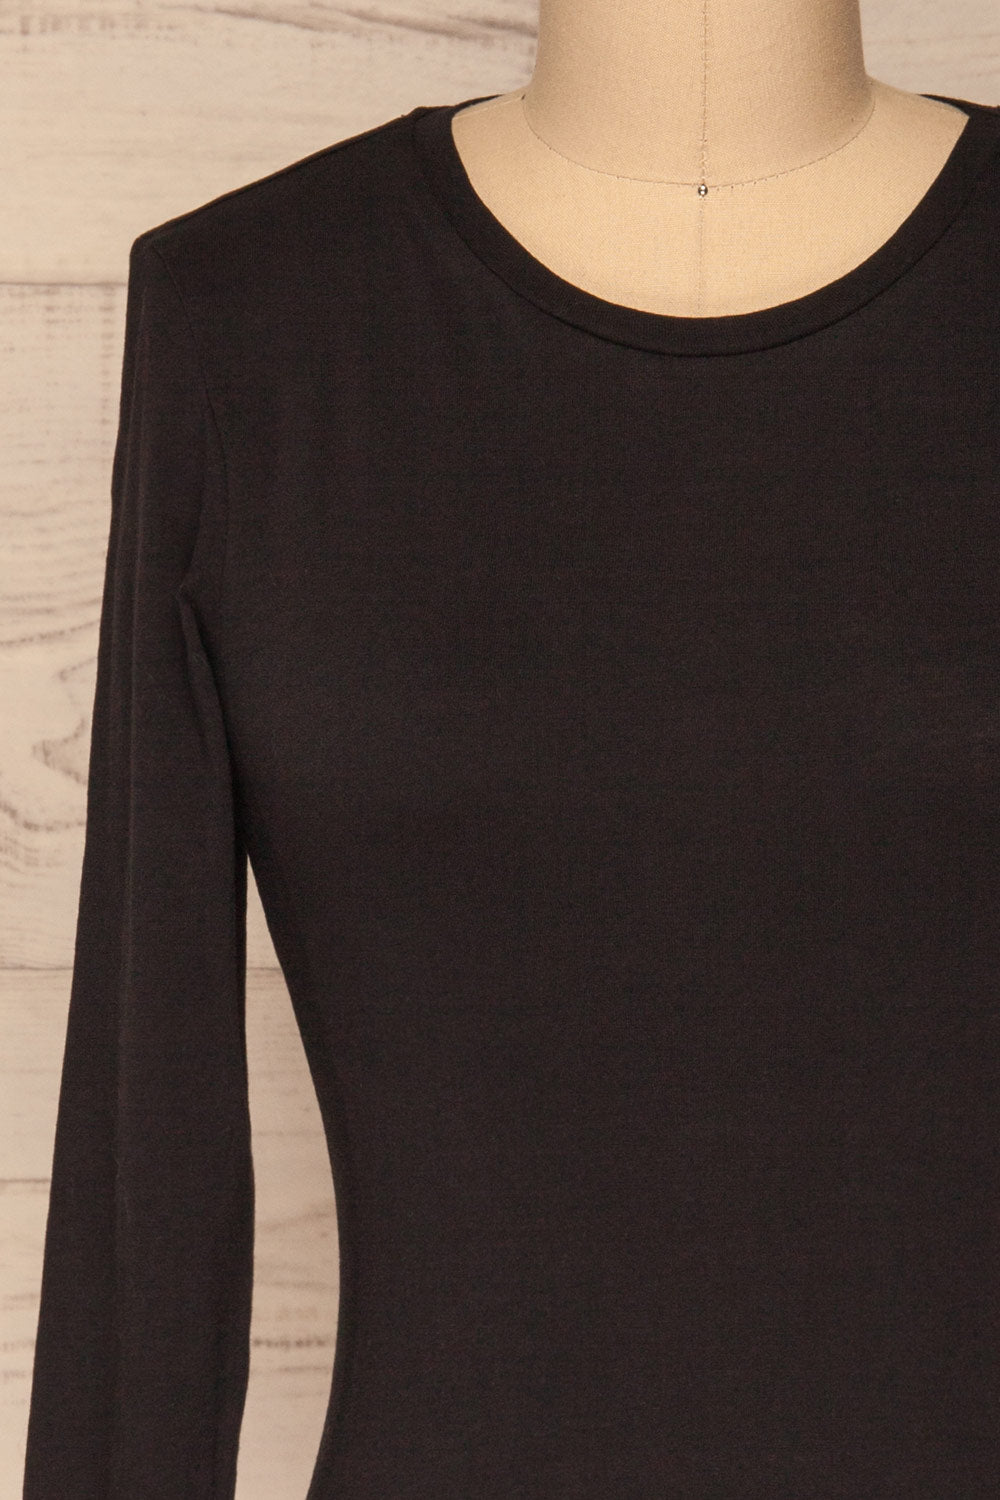 Otwock Black Long Sleeved Top | La Petite Garçonne front close-up